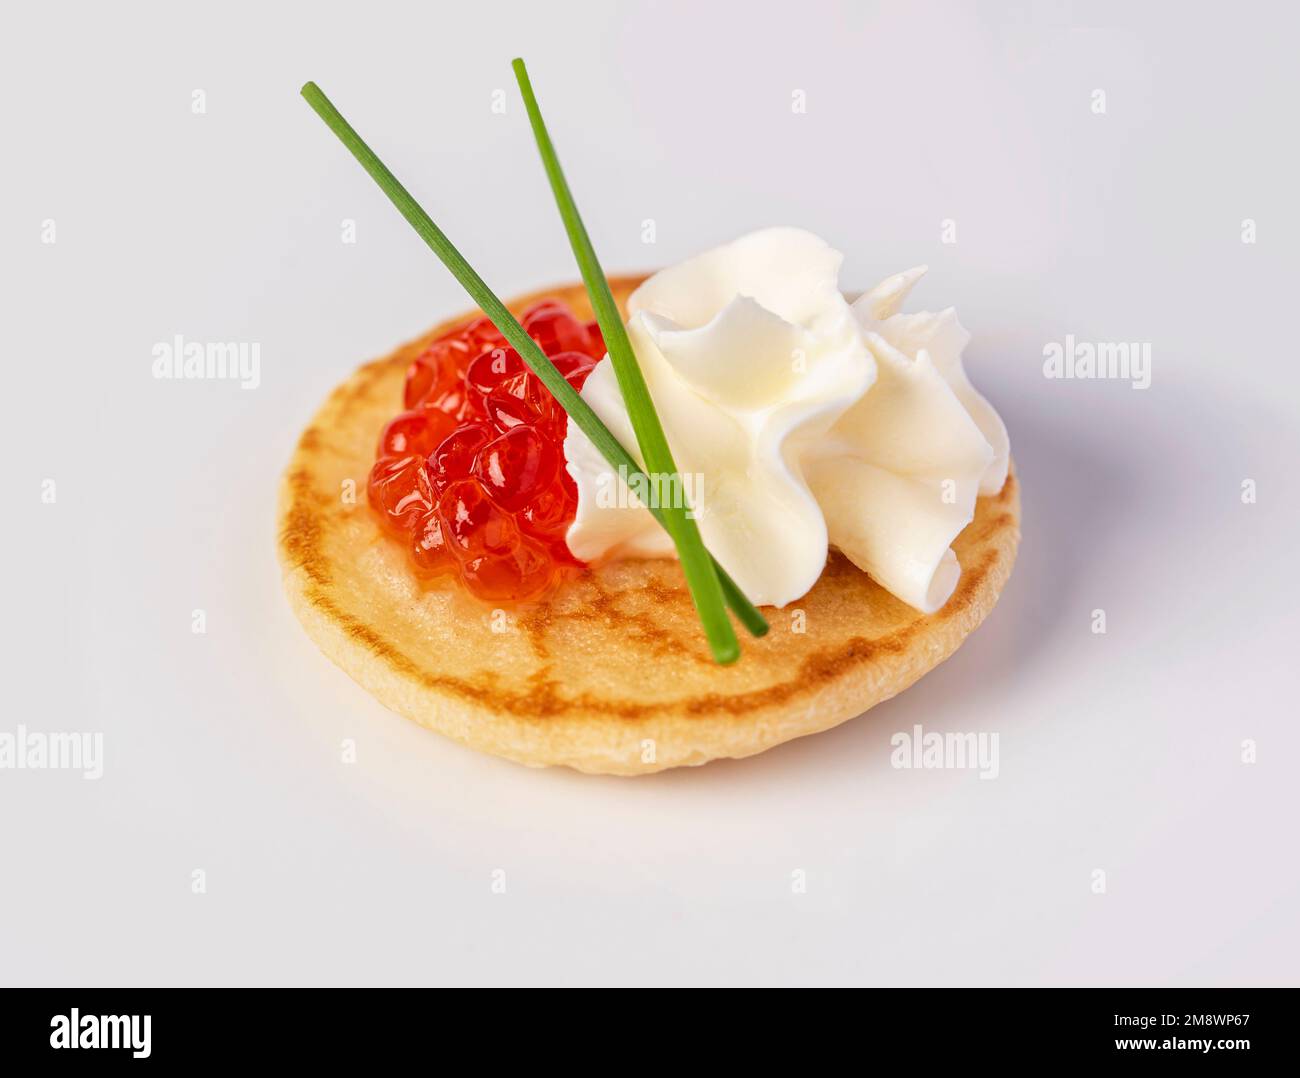 Makro-Food-Fotografie der Vorspeise mit Kaviar, Sahne, Schnittlauch, Imbiss, Meeresfrüchten Stockfoto